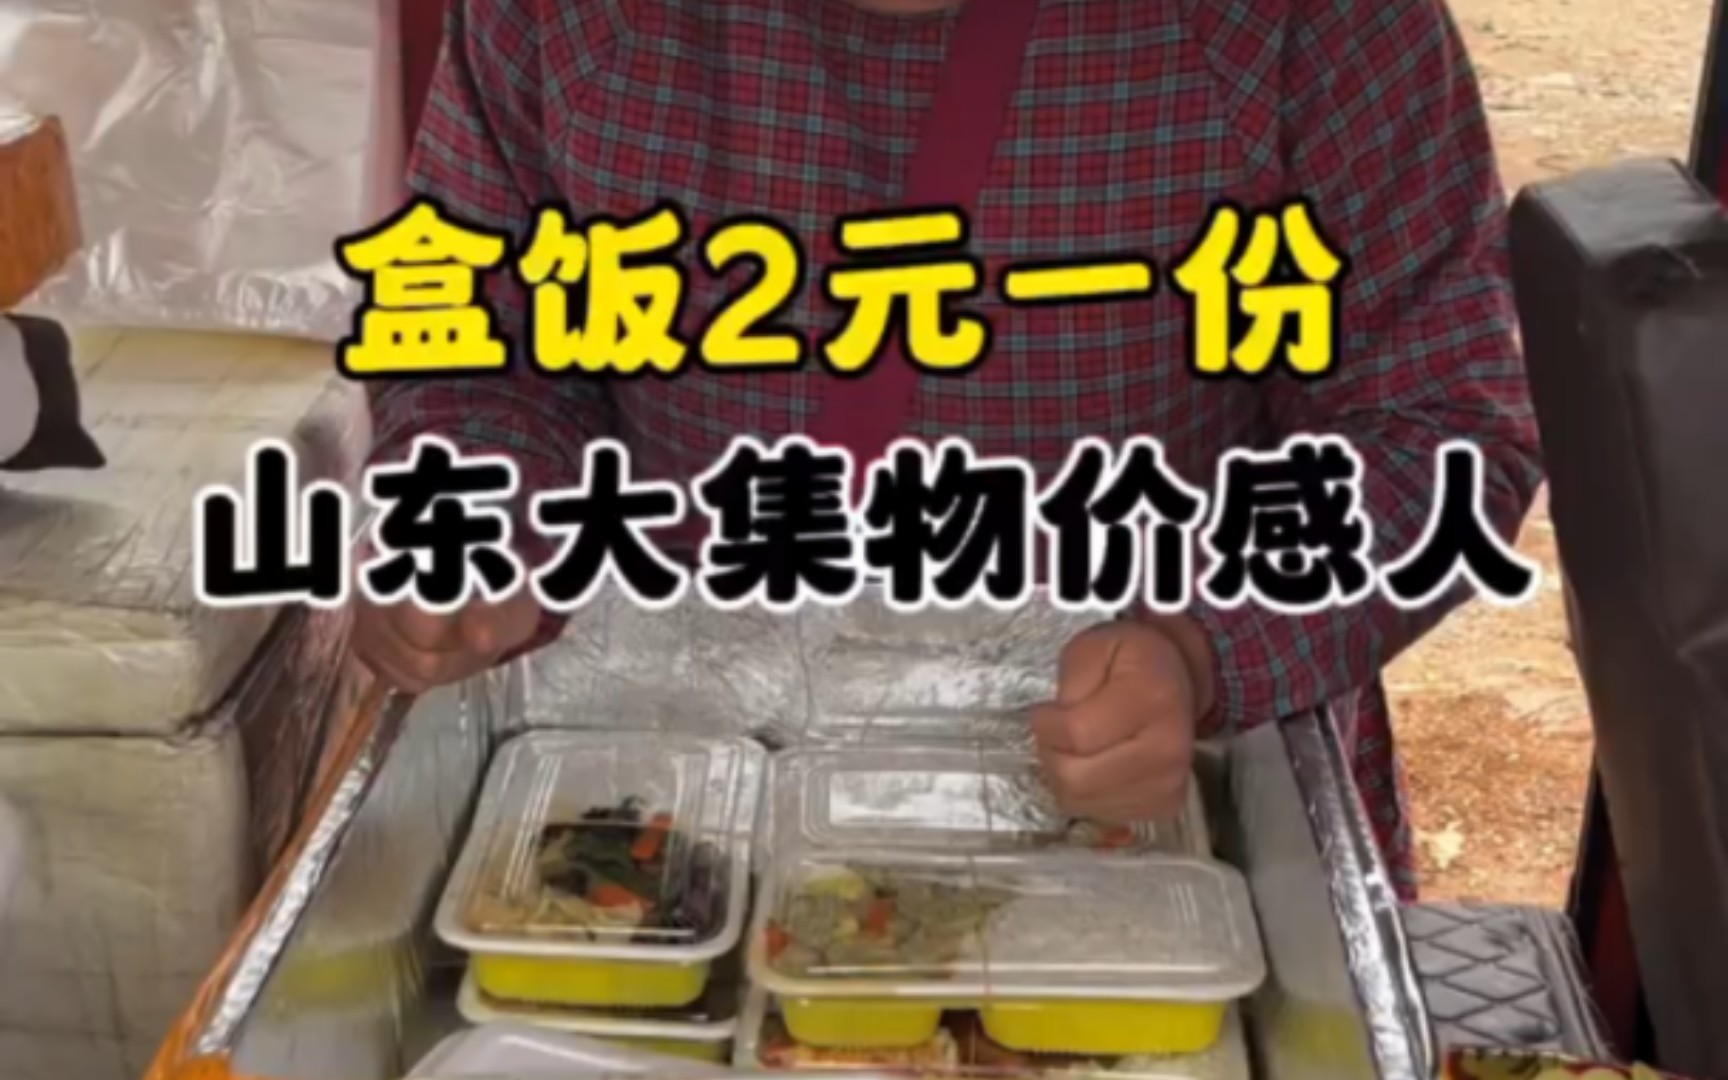 山东大集物价感人 盒饭2元一份只为了让年纪大的人吃口热乎饭